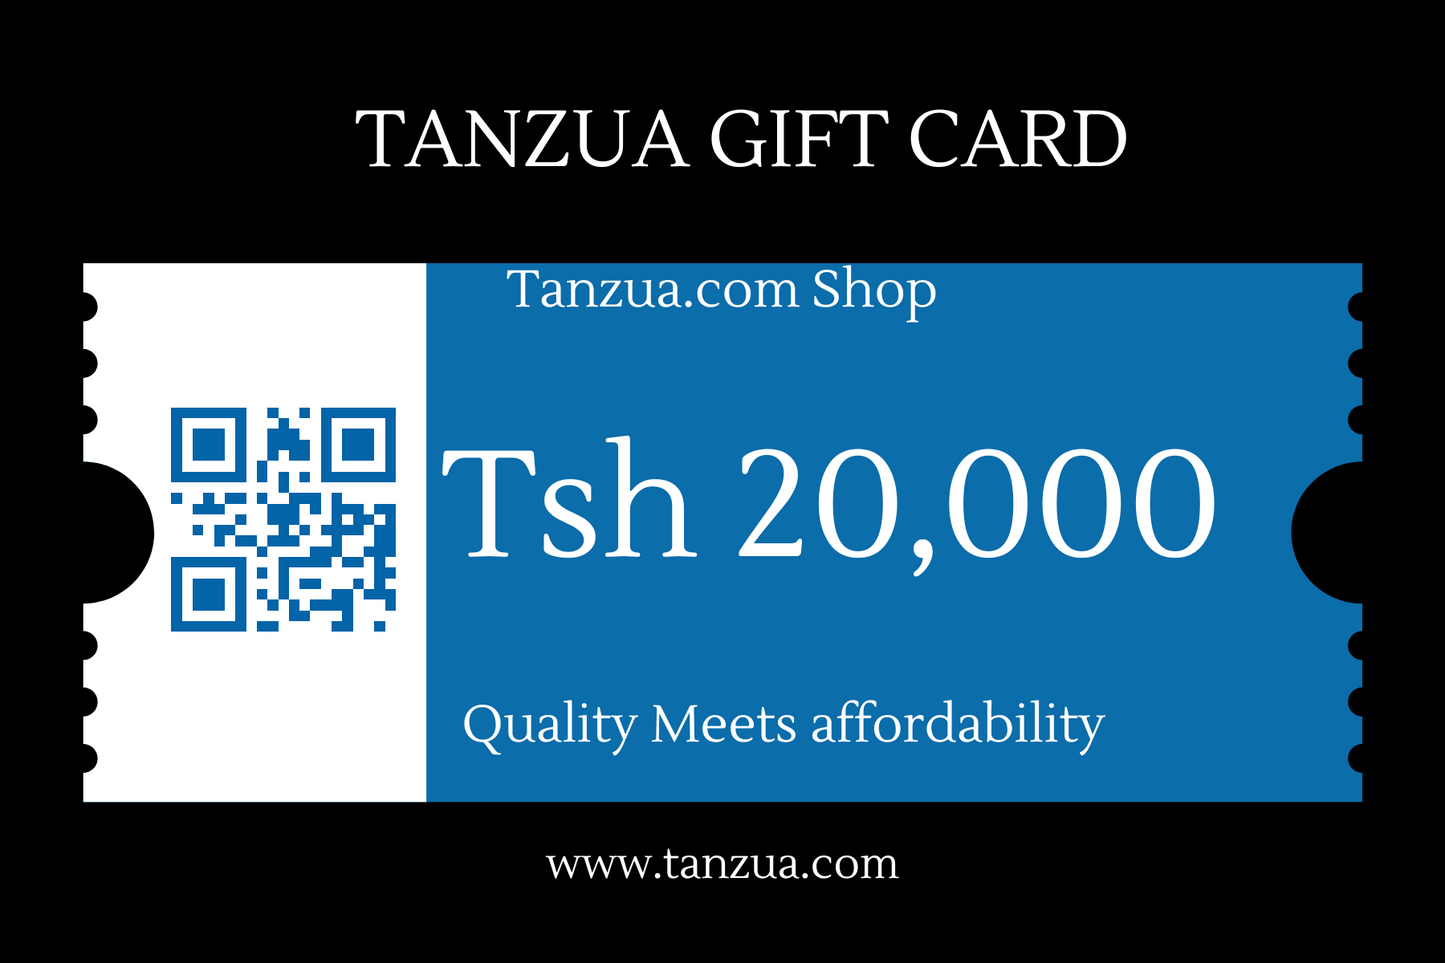 Tanzua Gift Card